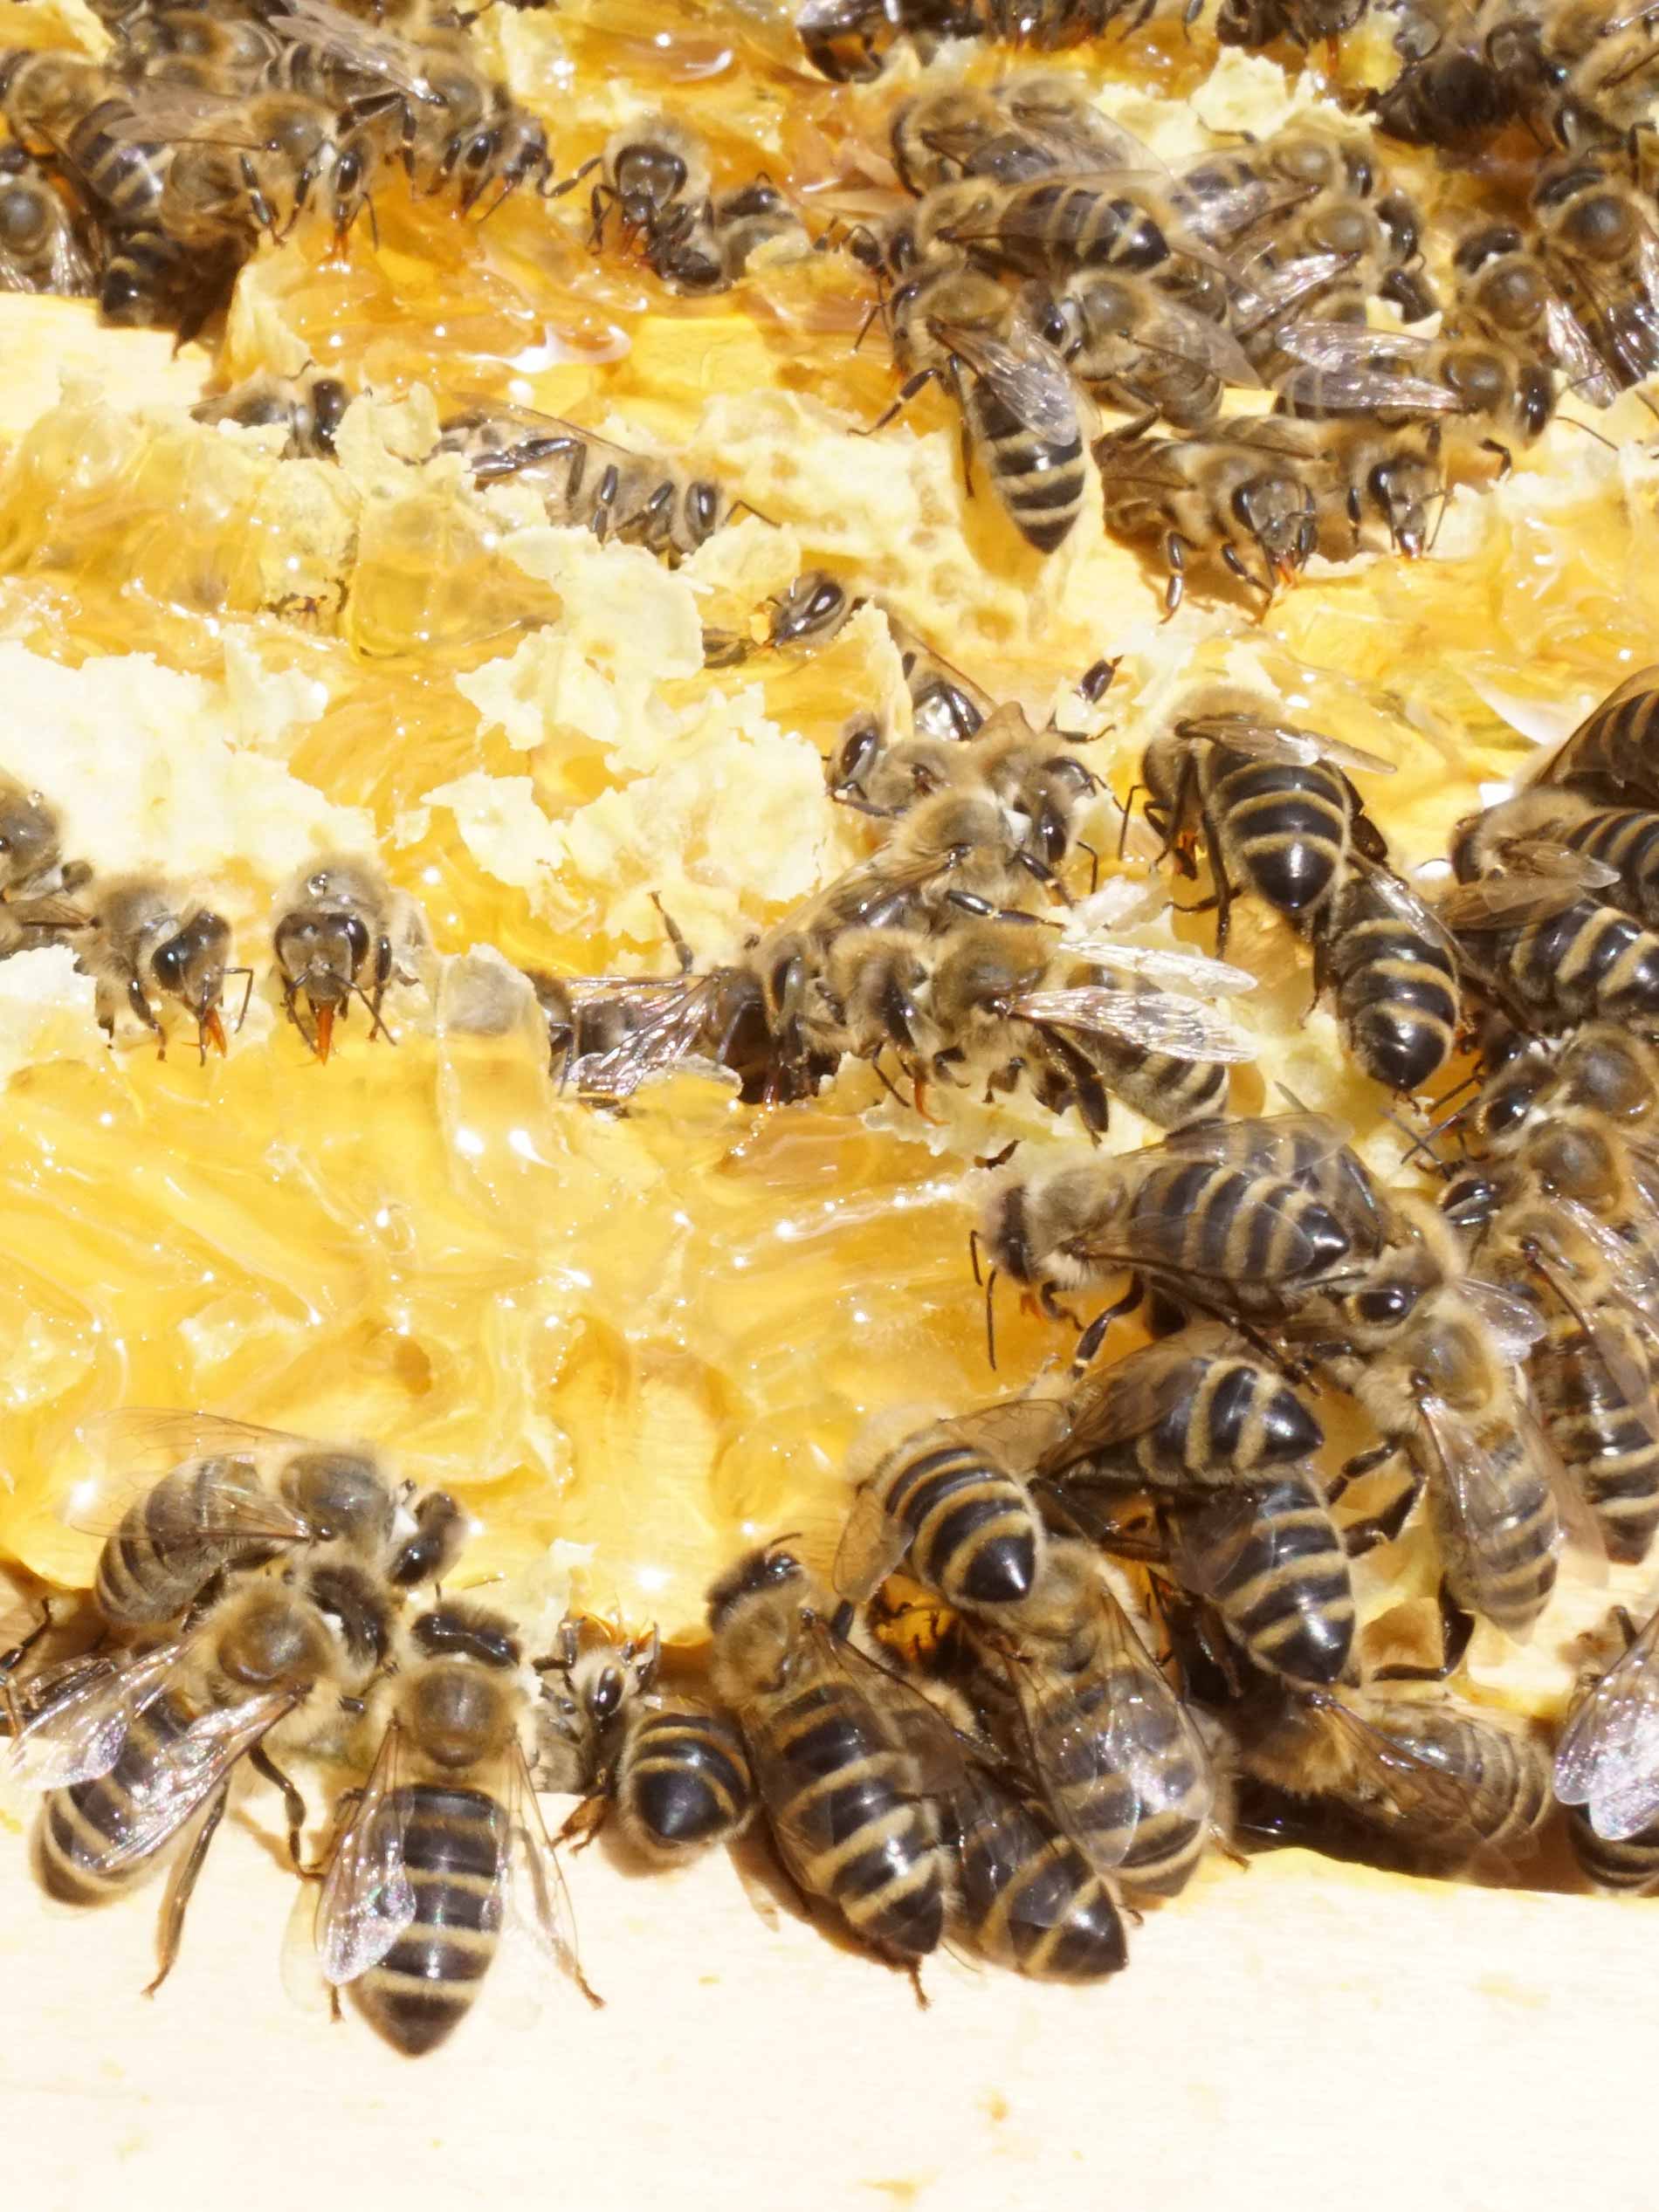 De zwerm bijen verzamelt de honing uit de open raten | mey®